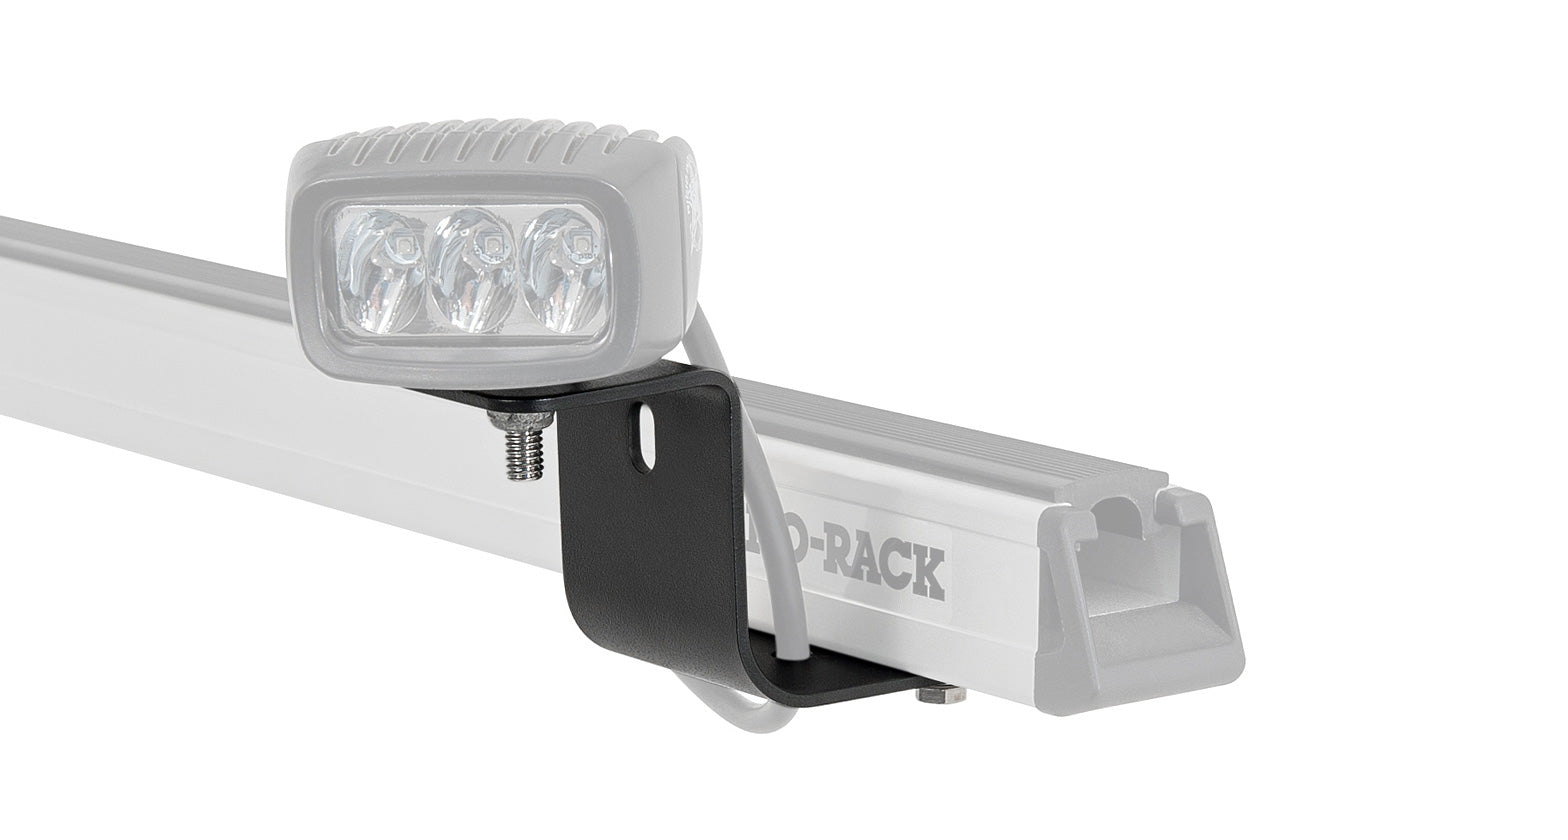 Rhino Rack Pioneer Worklight Bracket